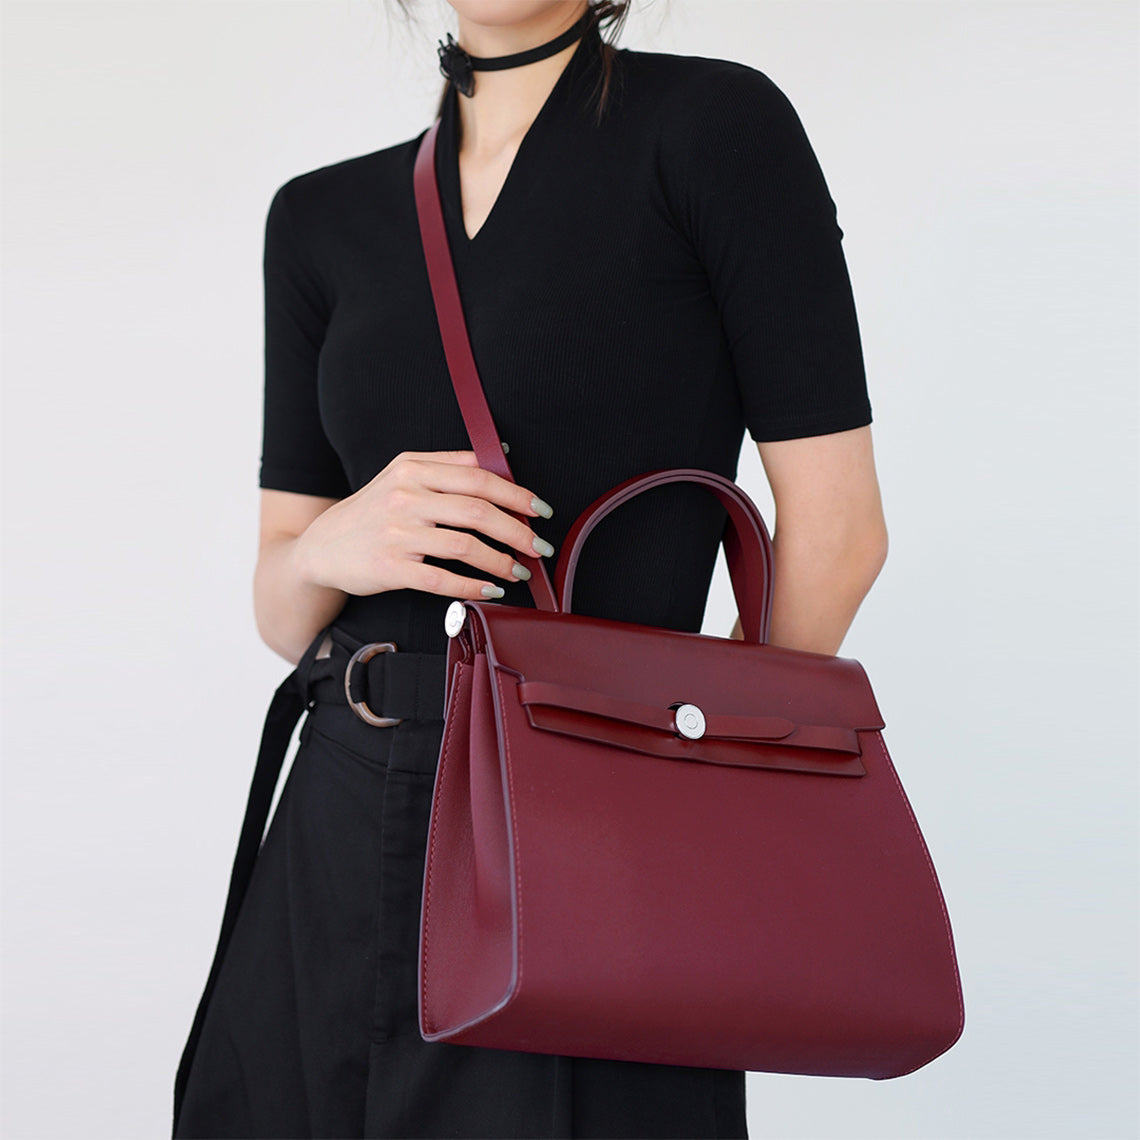 Red Leather Vintage Crossbody Bag Handbag | Inspired Herbag PM DIY Making Kit | POPSEWING™